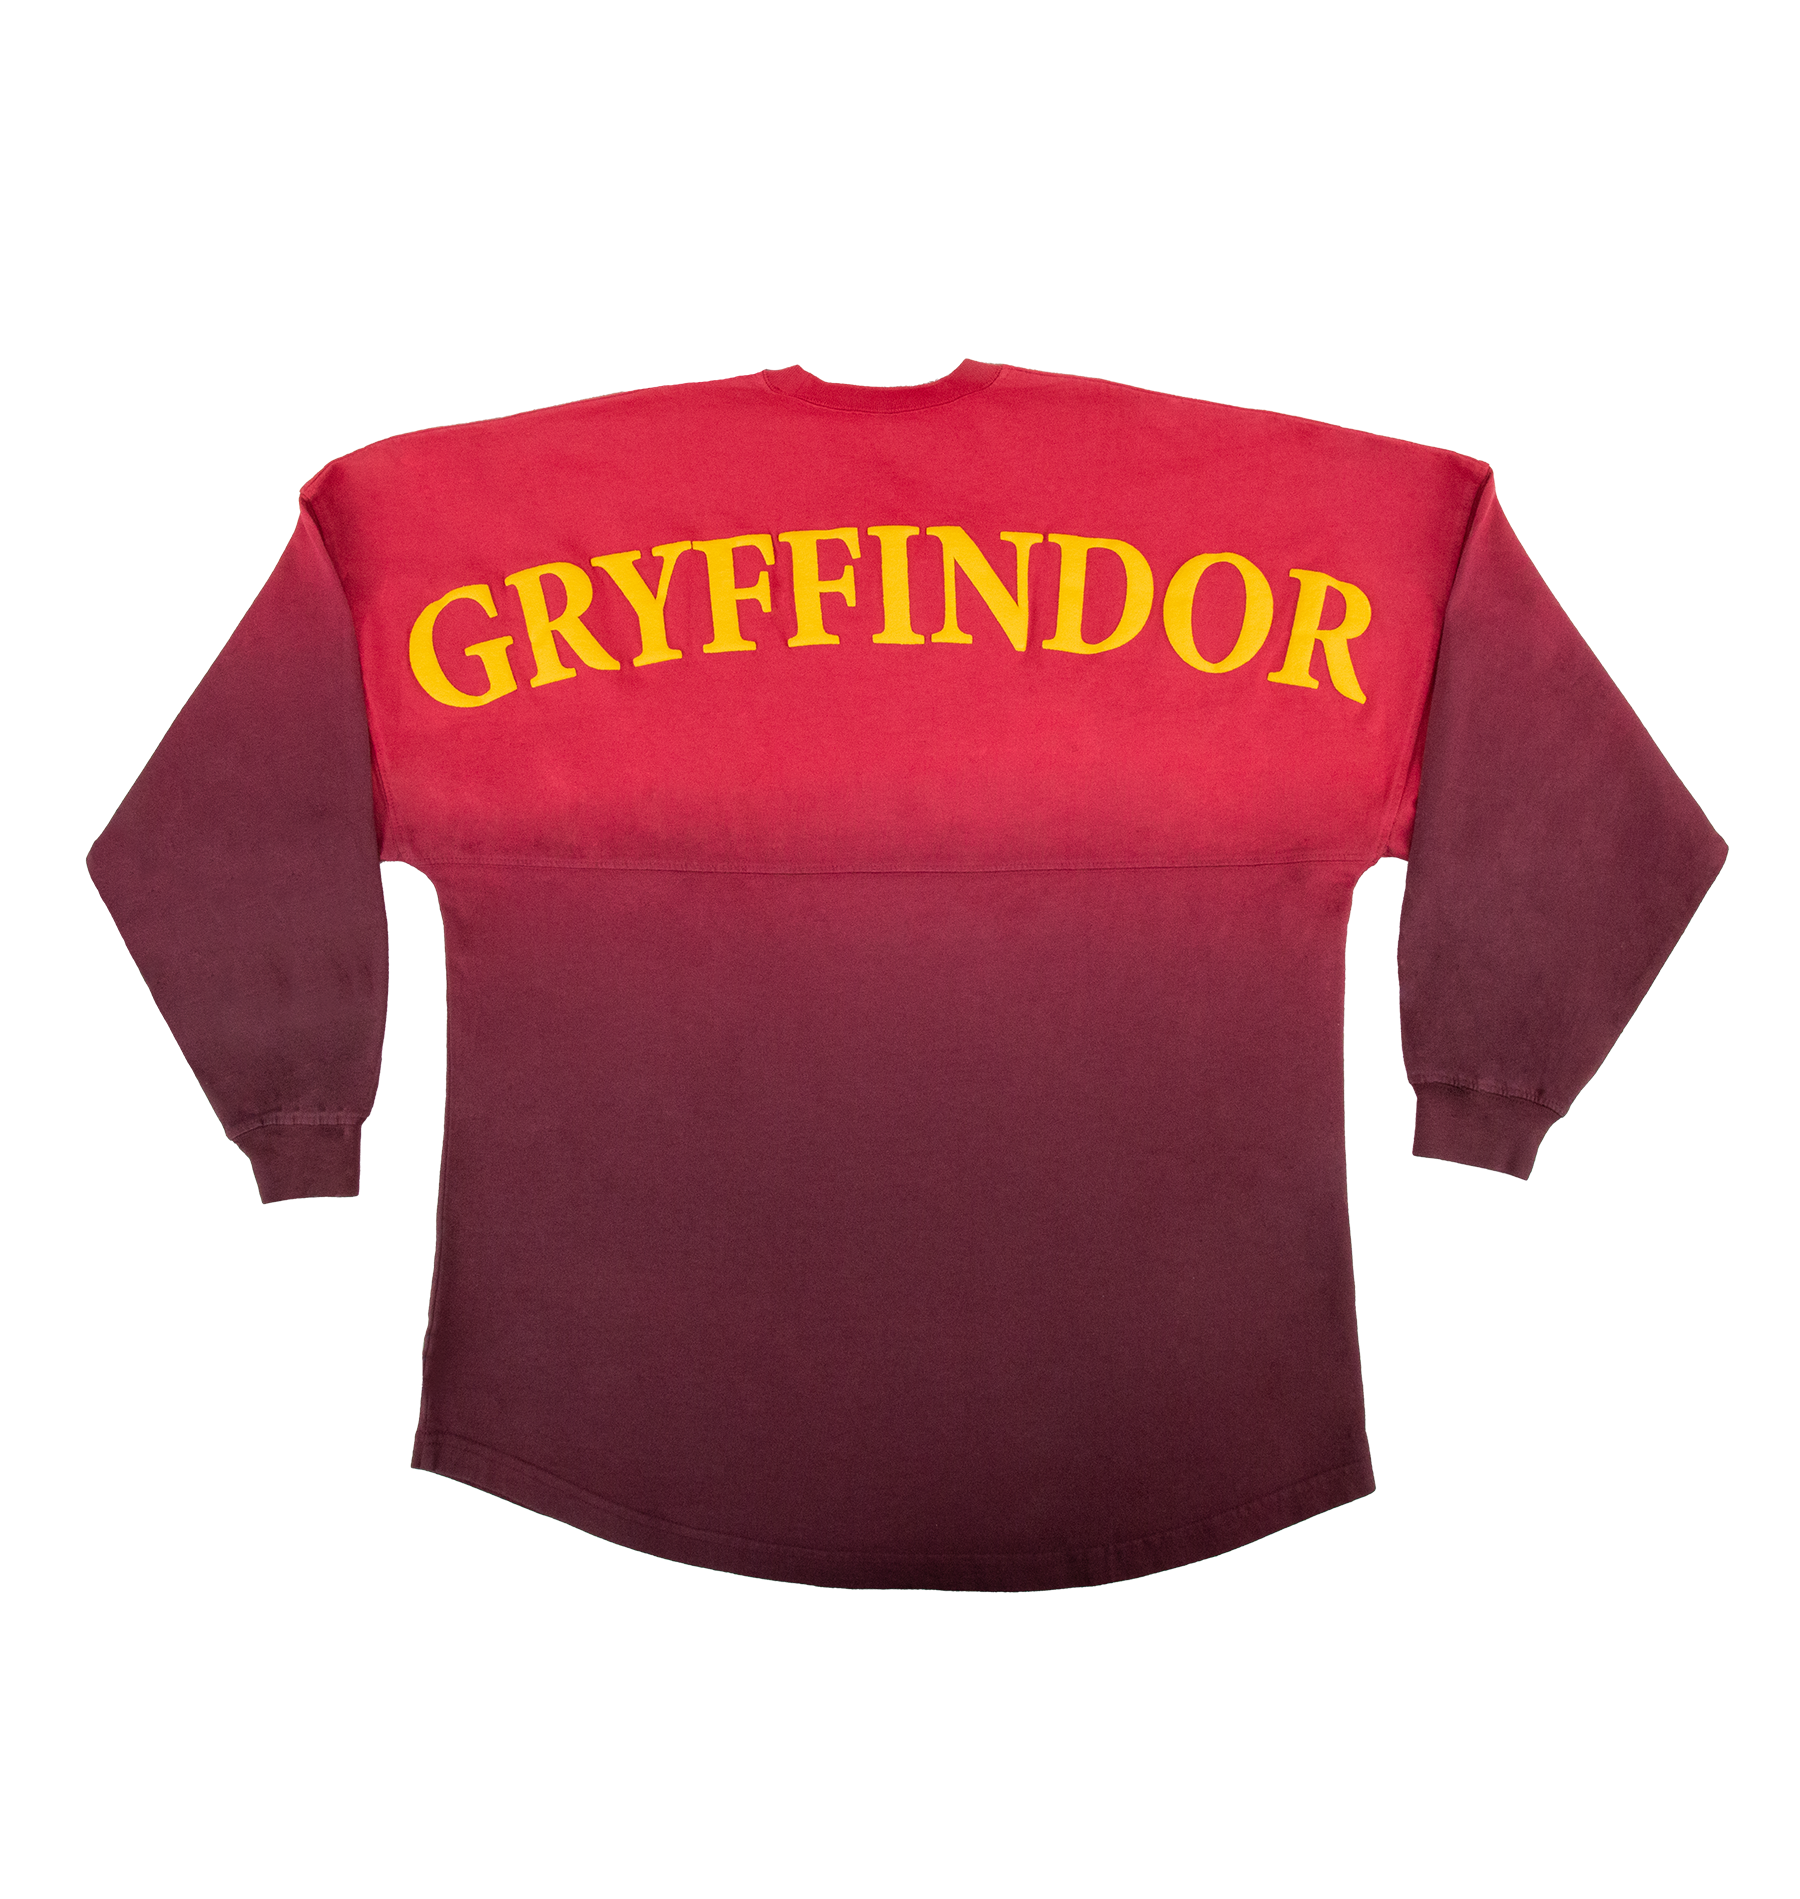 Gryffindor House Spirit Jersey